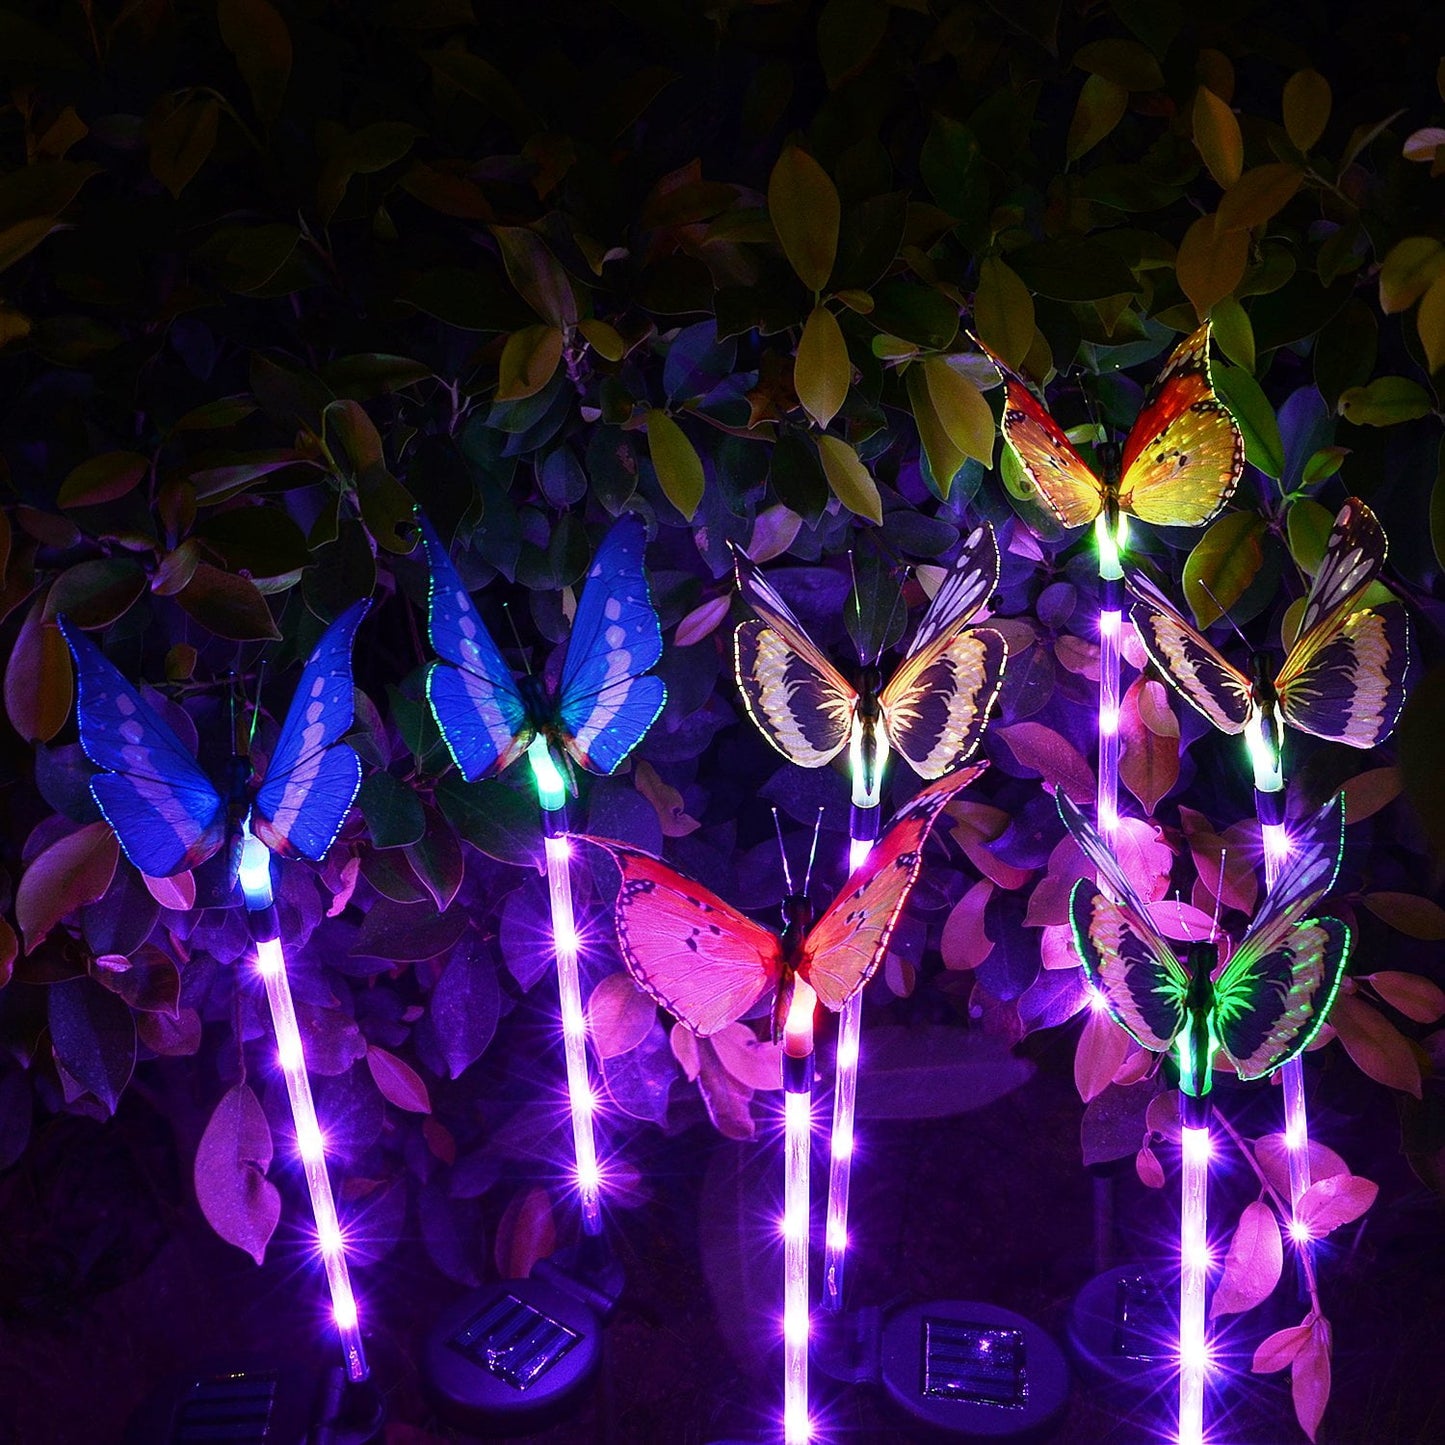 Butterfly Bliss Solar Garden Lights